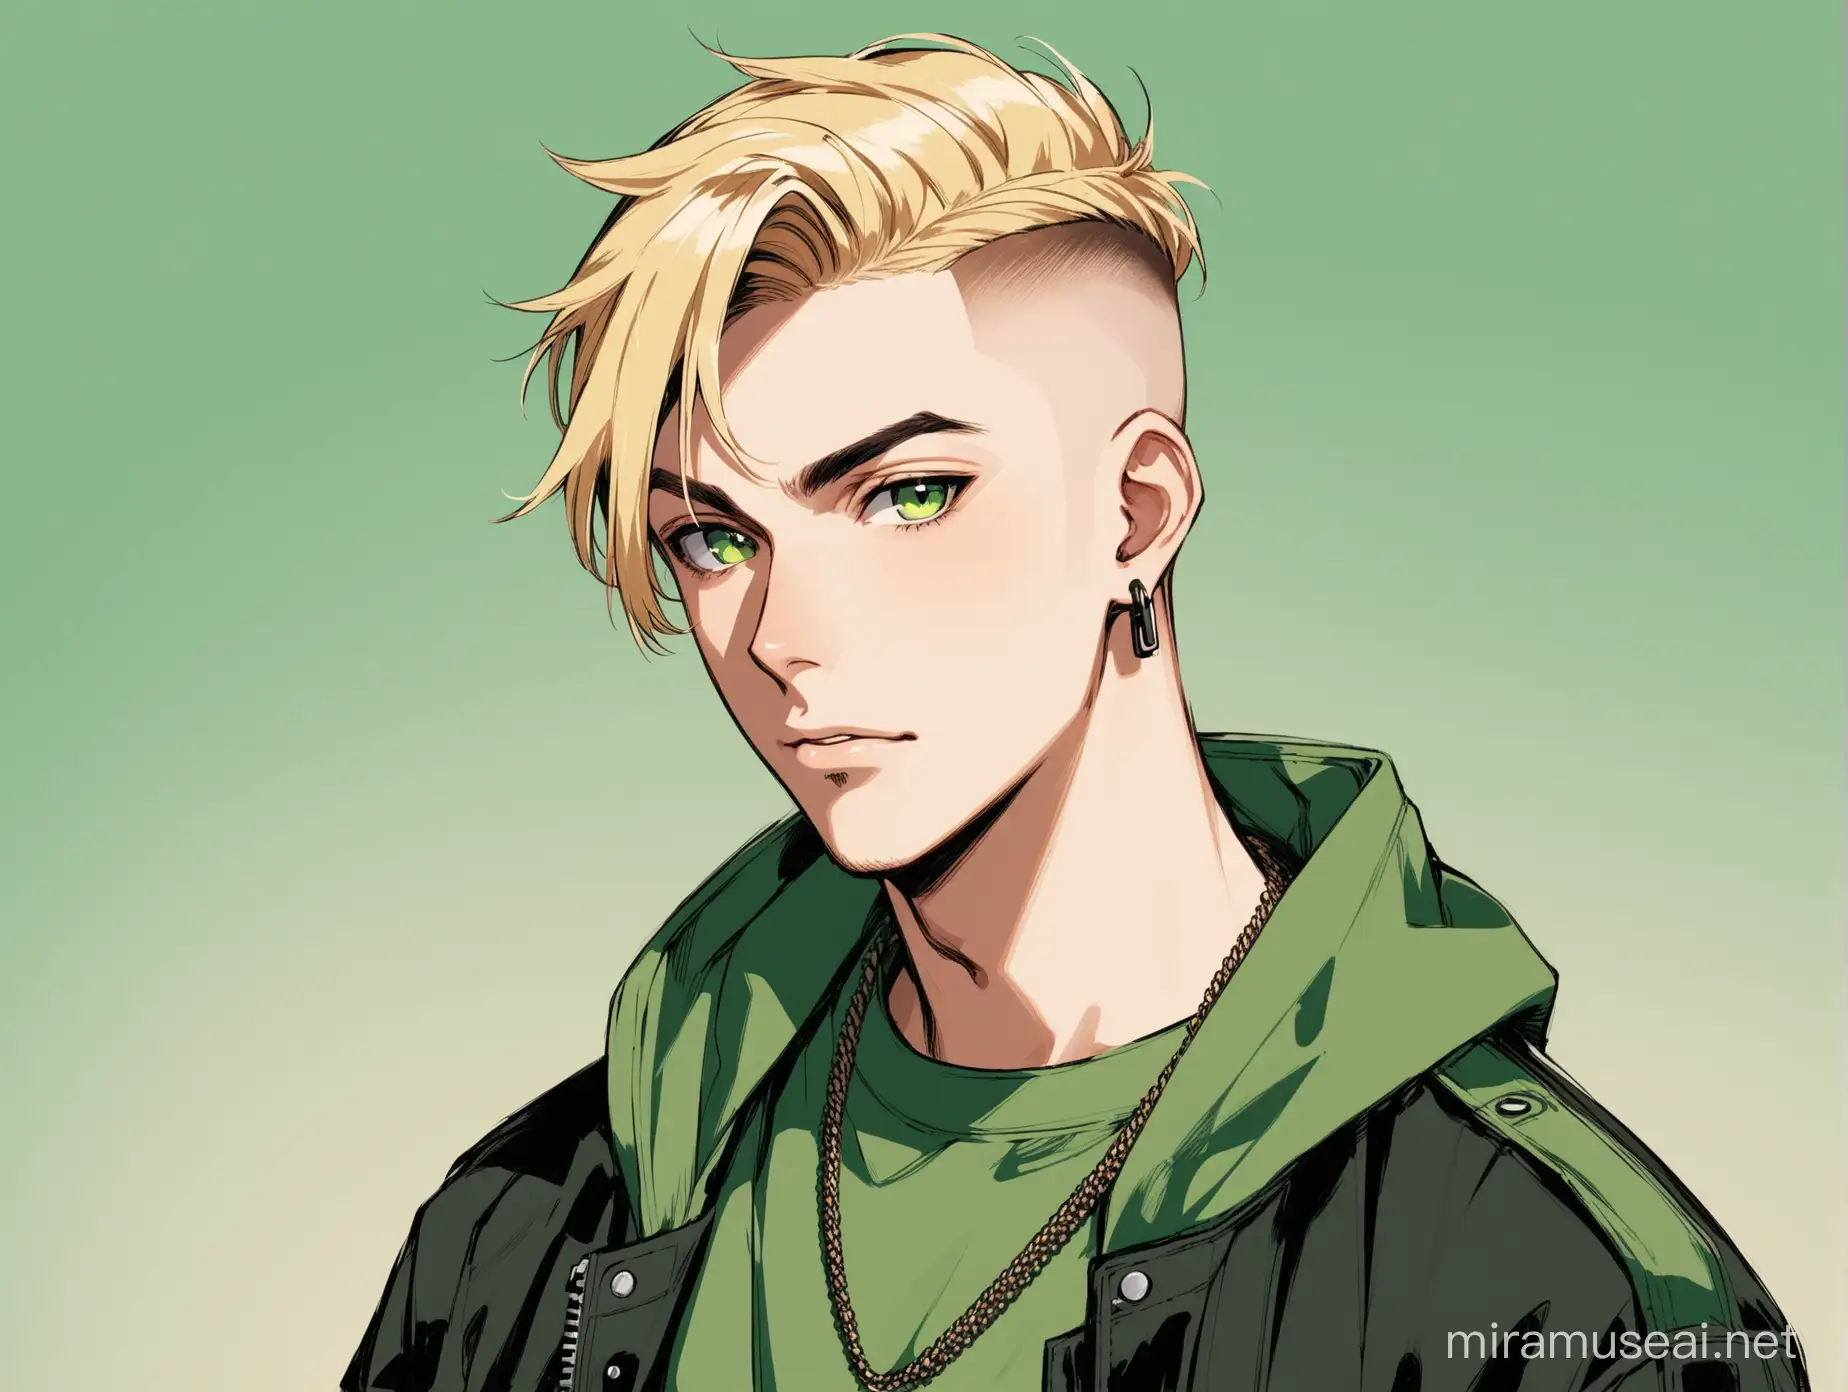 portrait eines blonden Mannes mit Undercut, er hat braun grüne-Augen, er trägt militärisch wirkende streetwear in grün, schwarz und beige